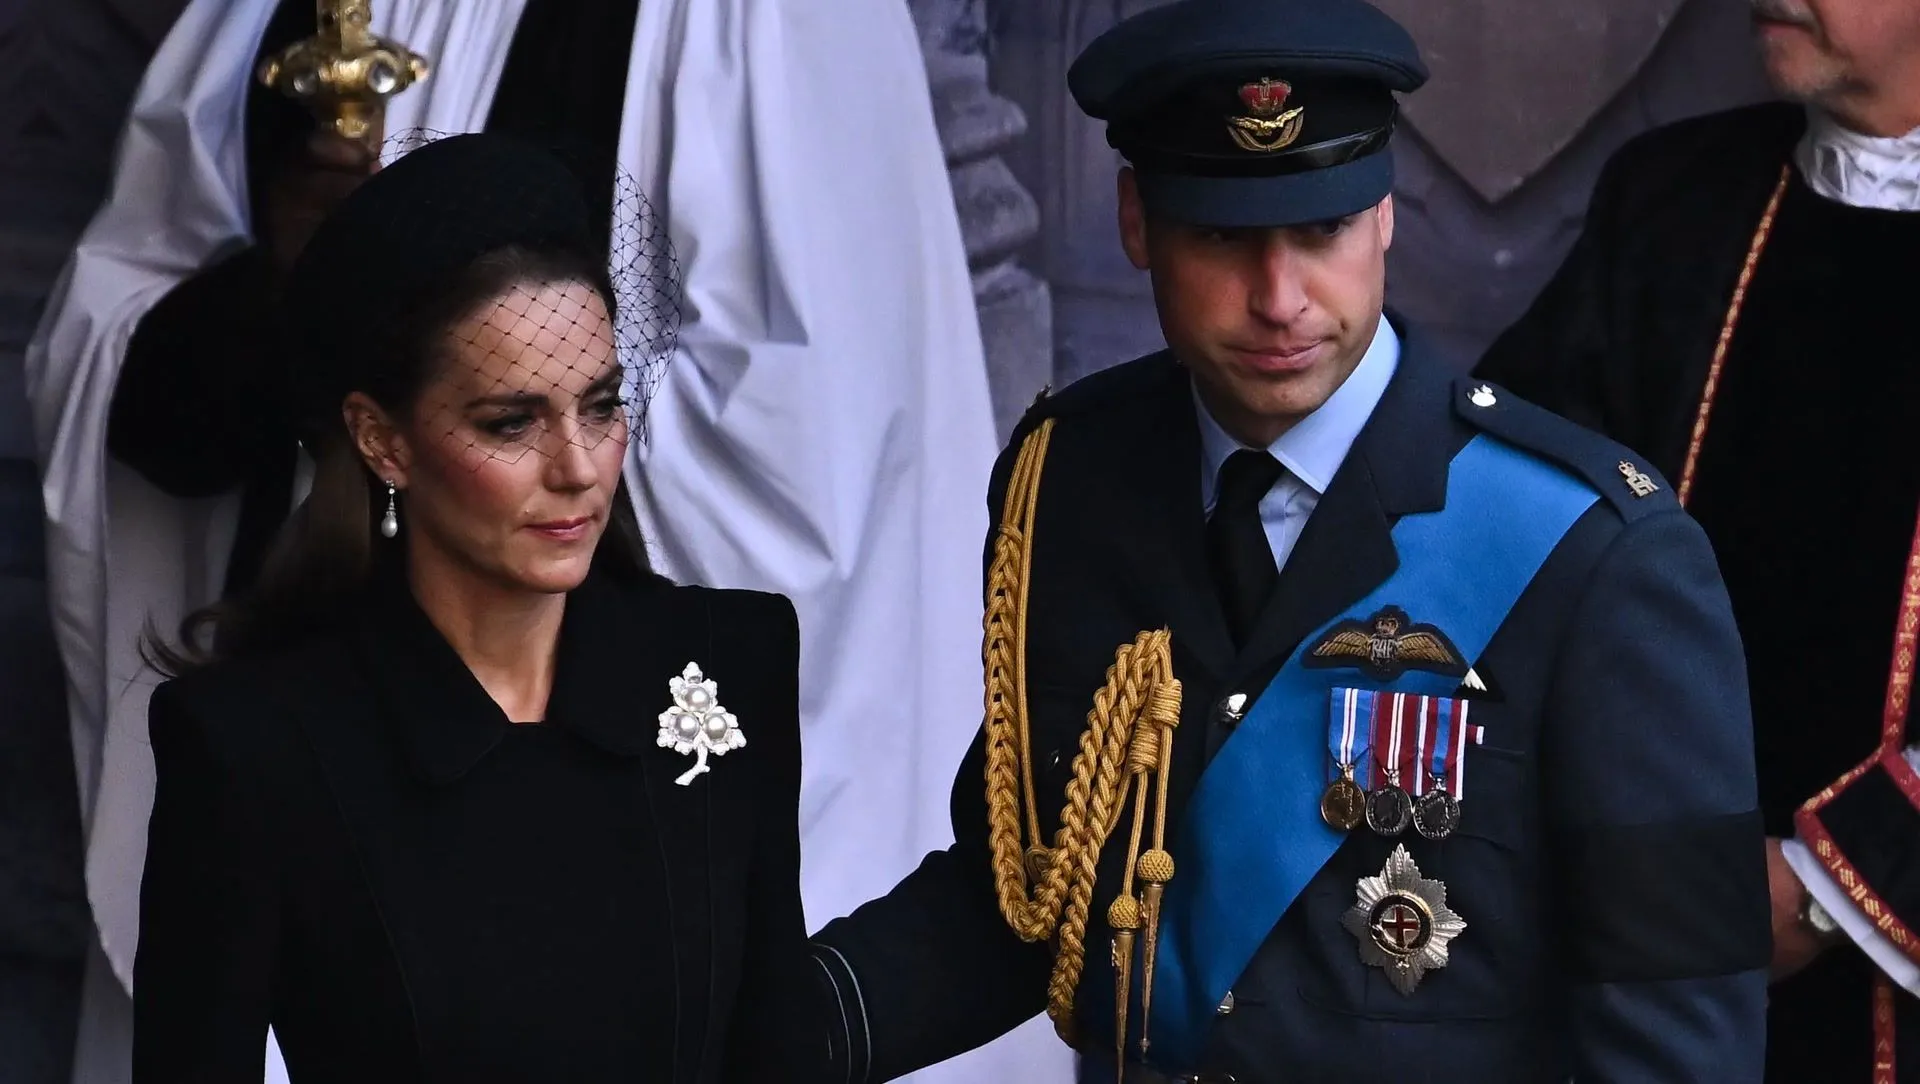 Książę William pociesza księżną Kate tym gestem: Zdjęcia wchodzą pod skórę